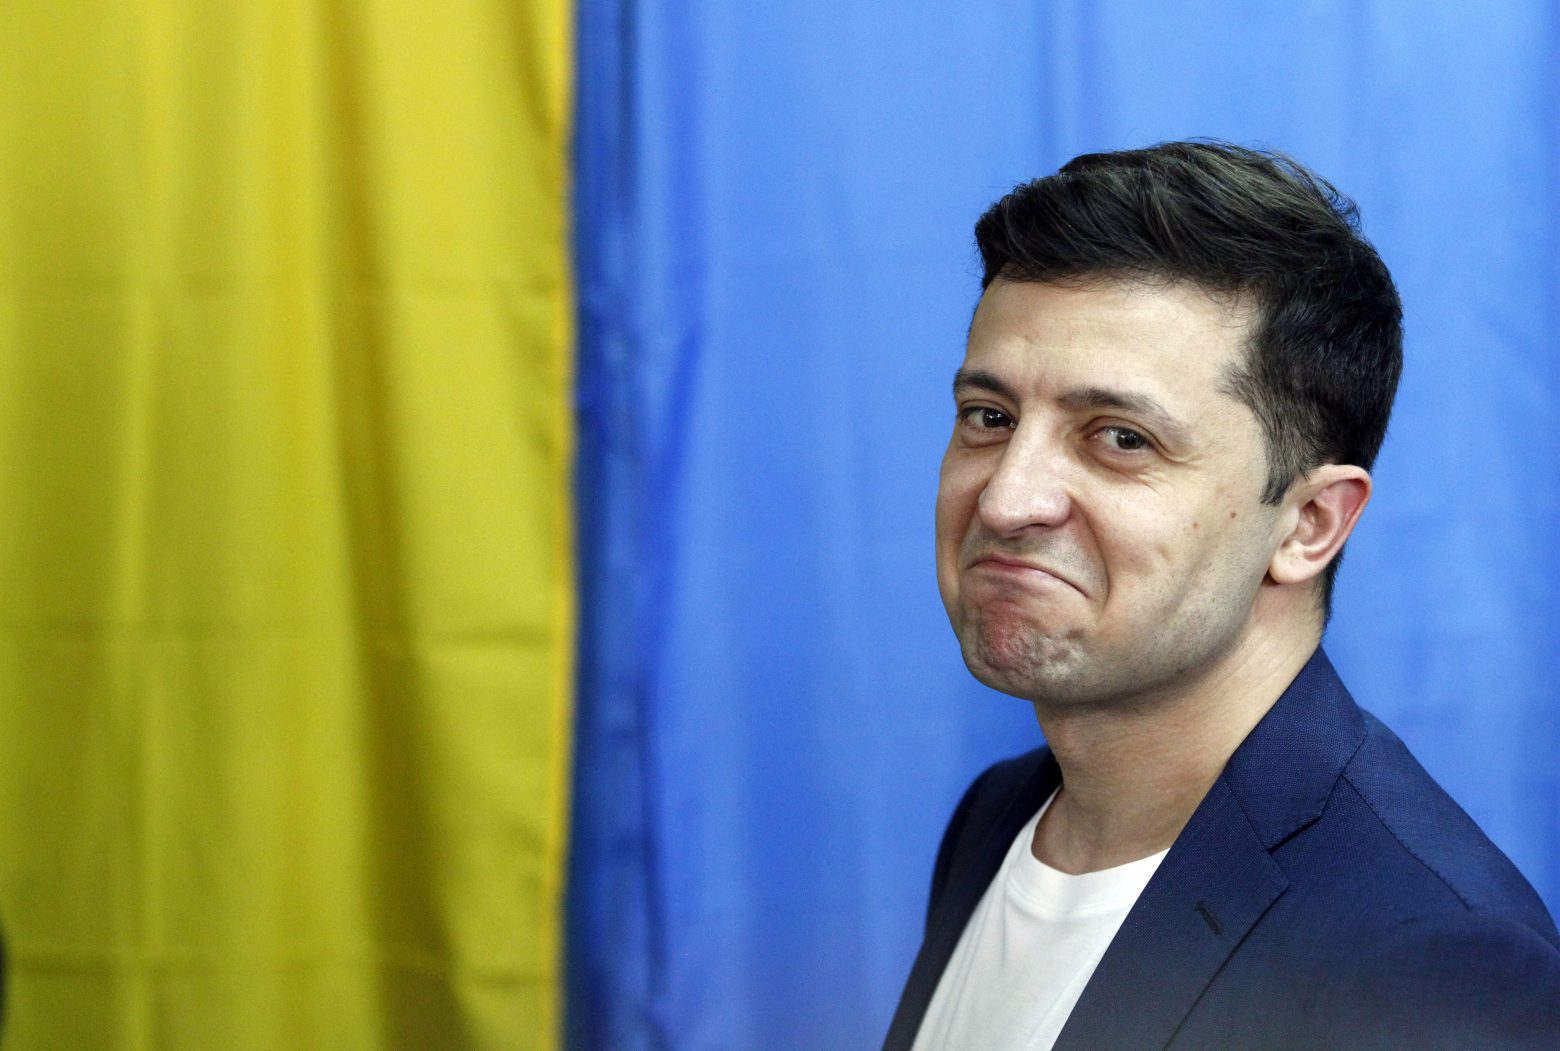 Ουκρανία - Εκτός νόμου τίθενται δύο τηλεοπτικοί σταθμοί που πρόσκεινται στη φιλορωσική αντιπολίτευση